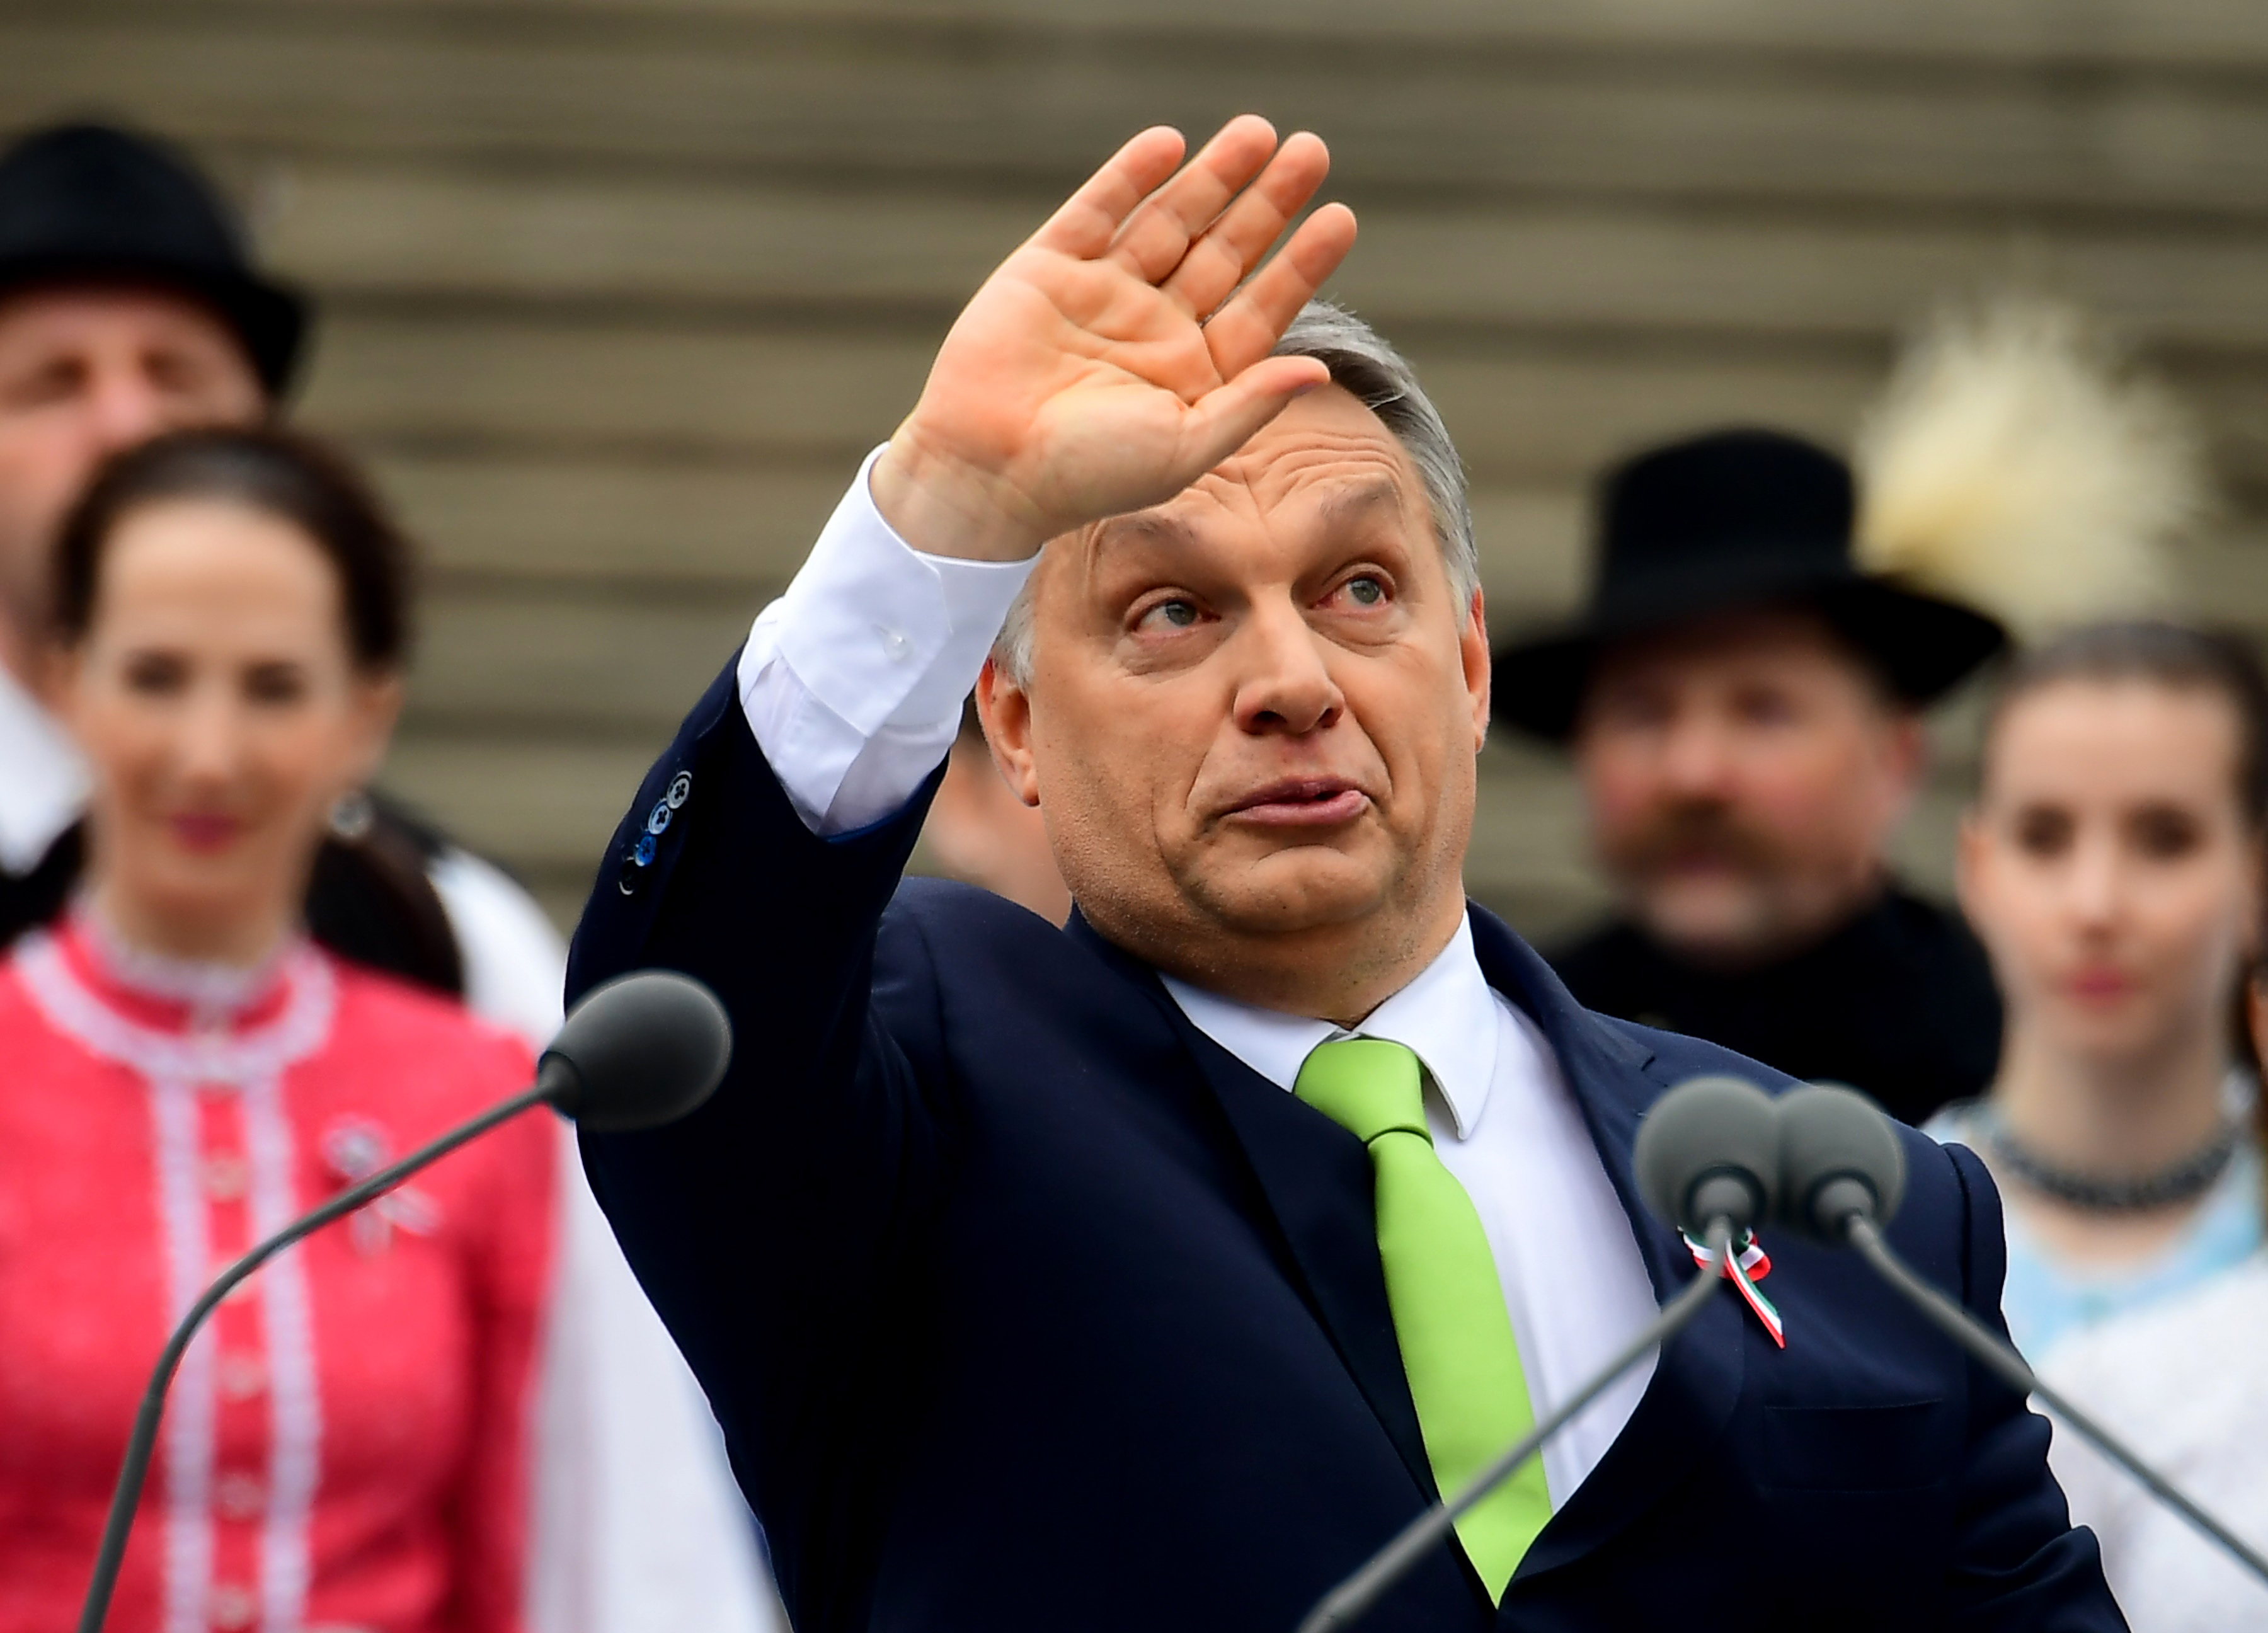 Ott tartunk, hogy már a Breitbarton szélsőjobboldalizzák Orbánt